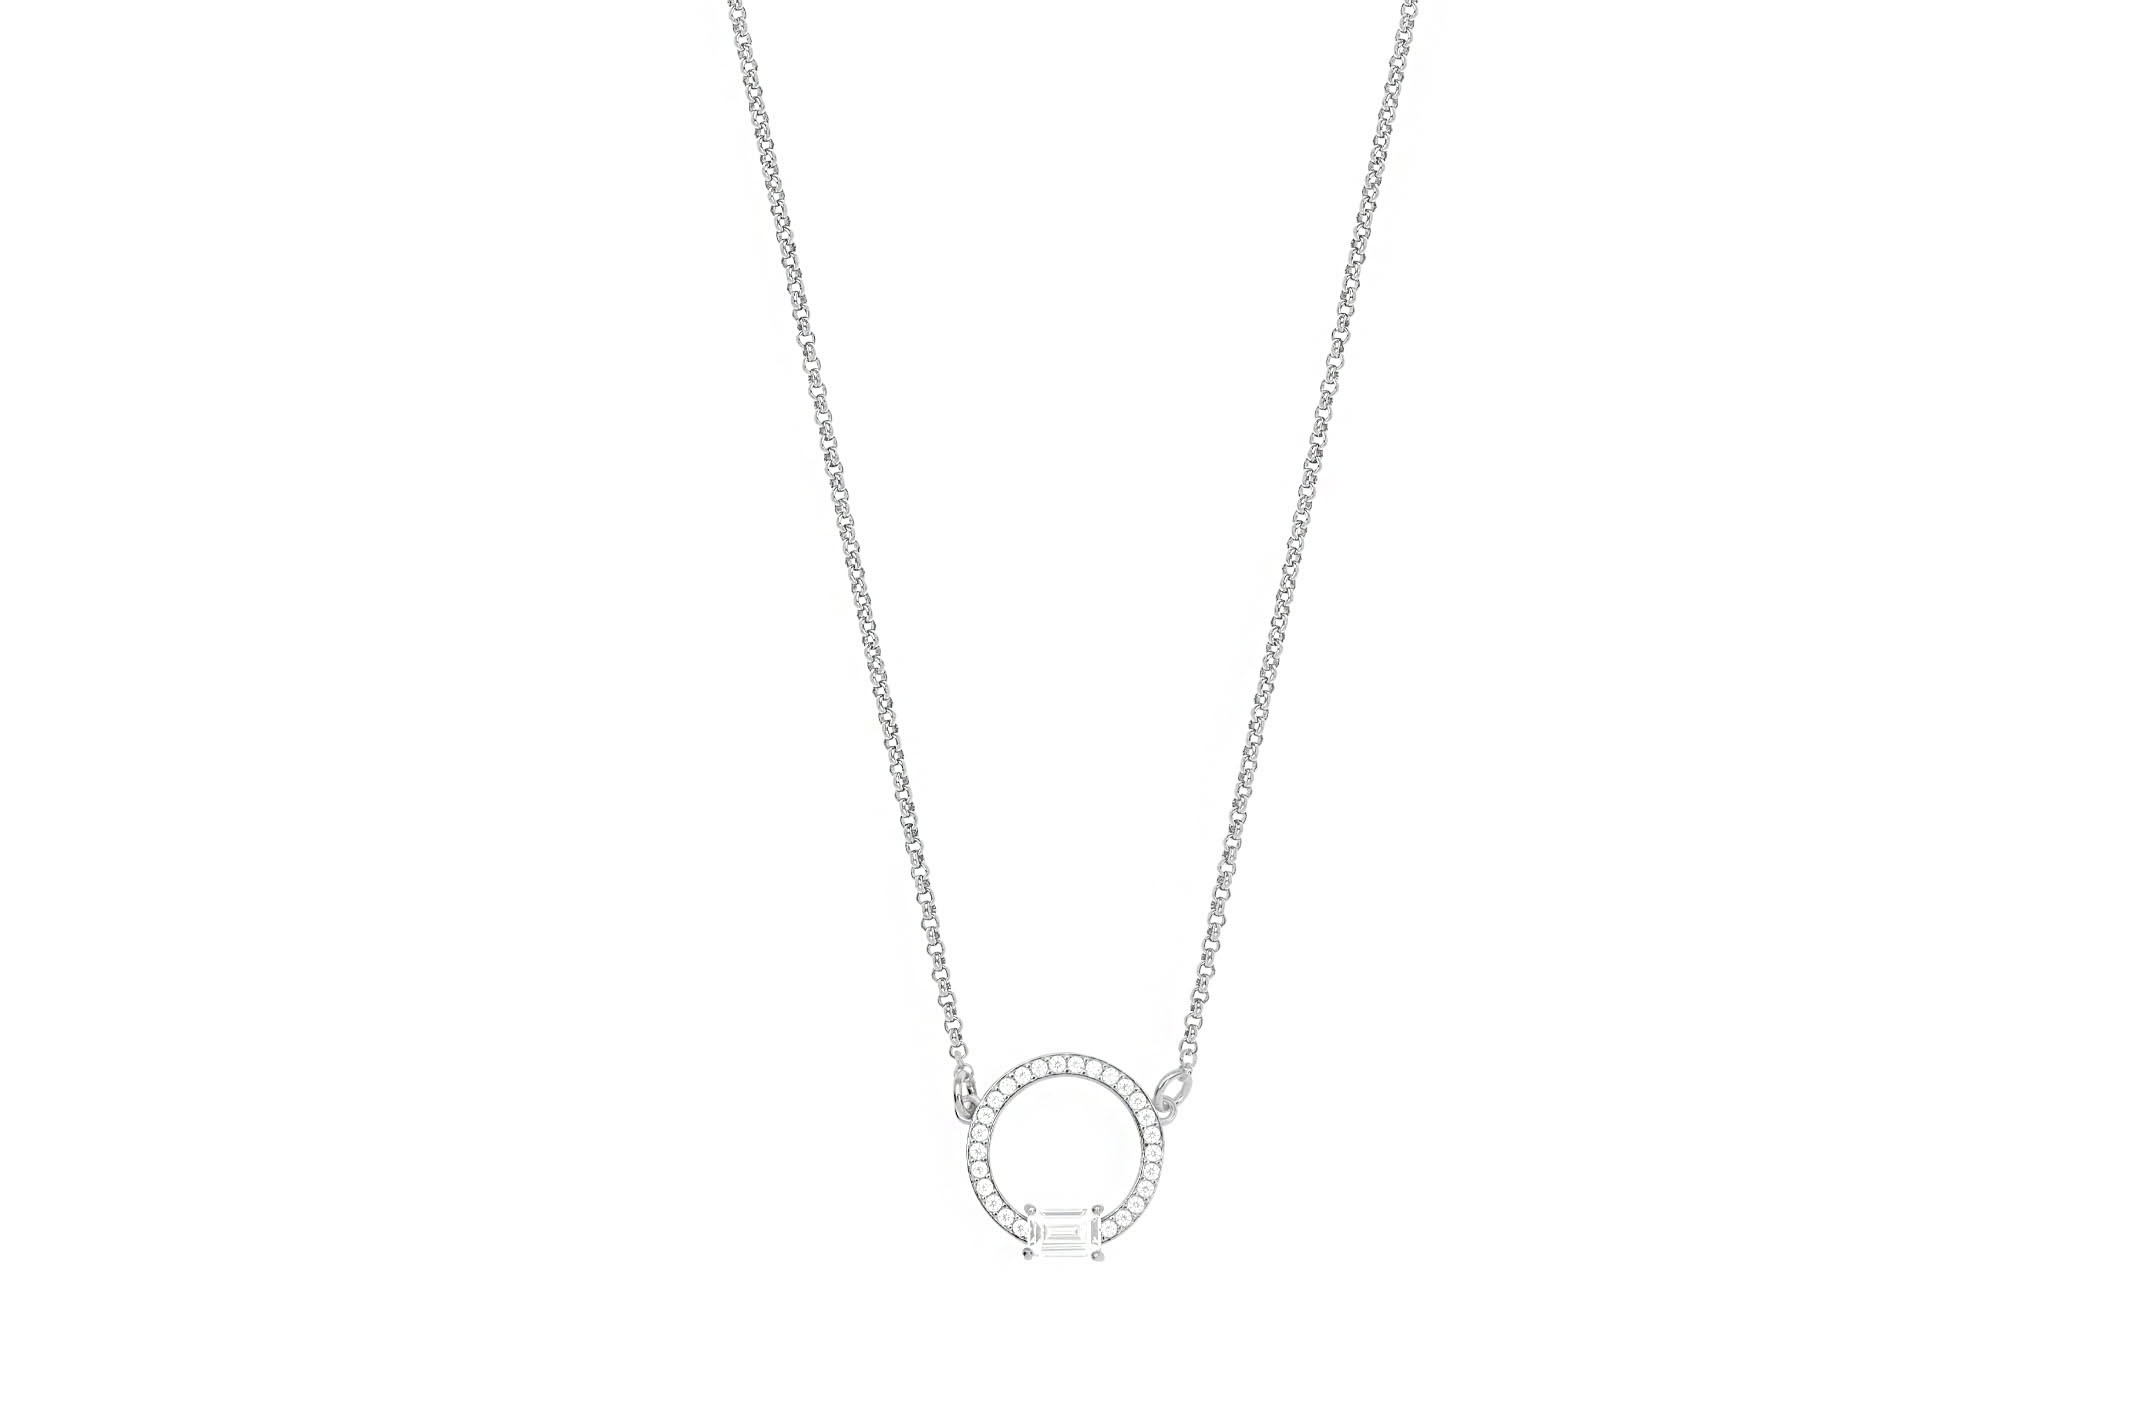 Joia: colar;Material: prata 925;Peso: 4.5 gr;Pedra: zircónia;Cor: branco;Medida: 38 cm + 5 cm;Medida pendente: 1.5 cm